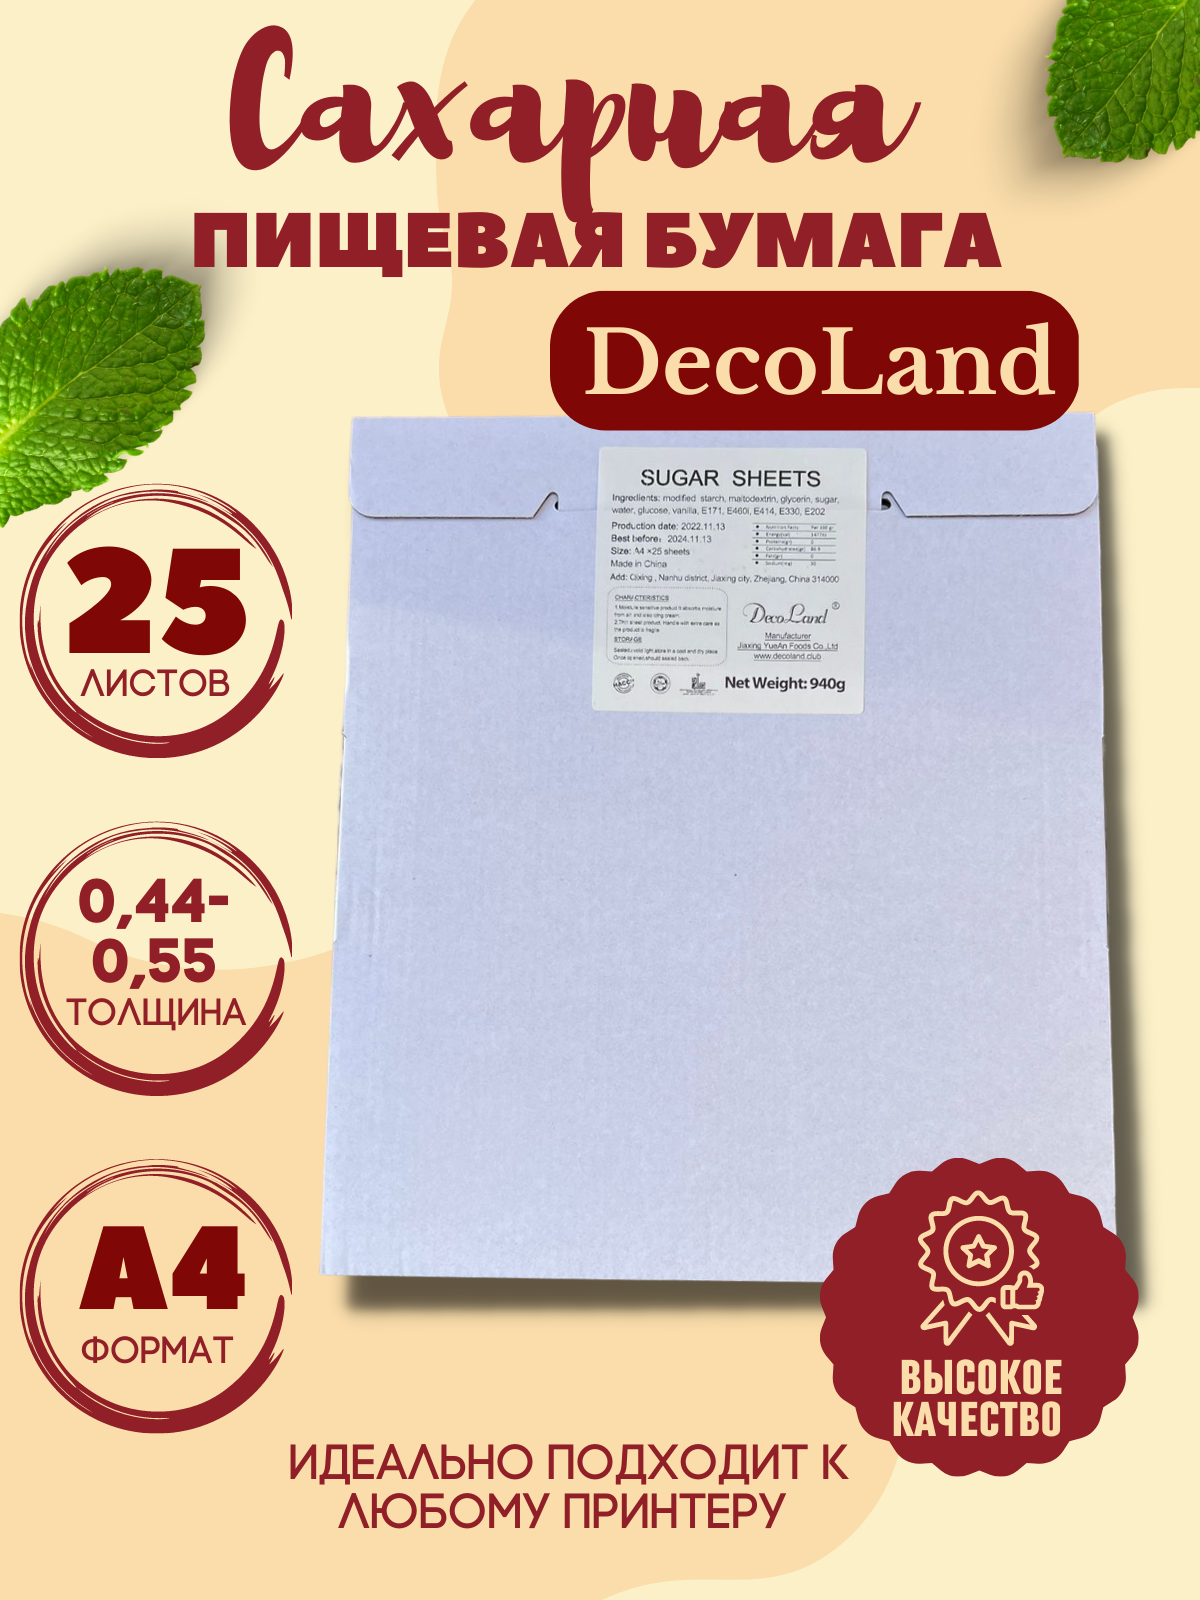 Сахарная пищевая бумага А4 DecoLand, 25 листов